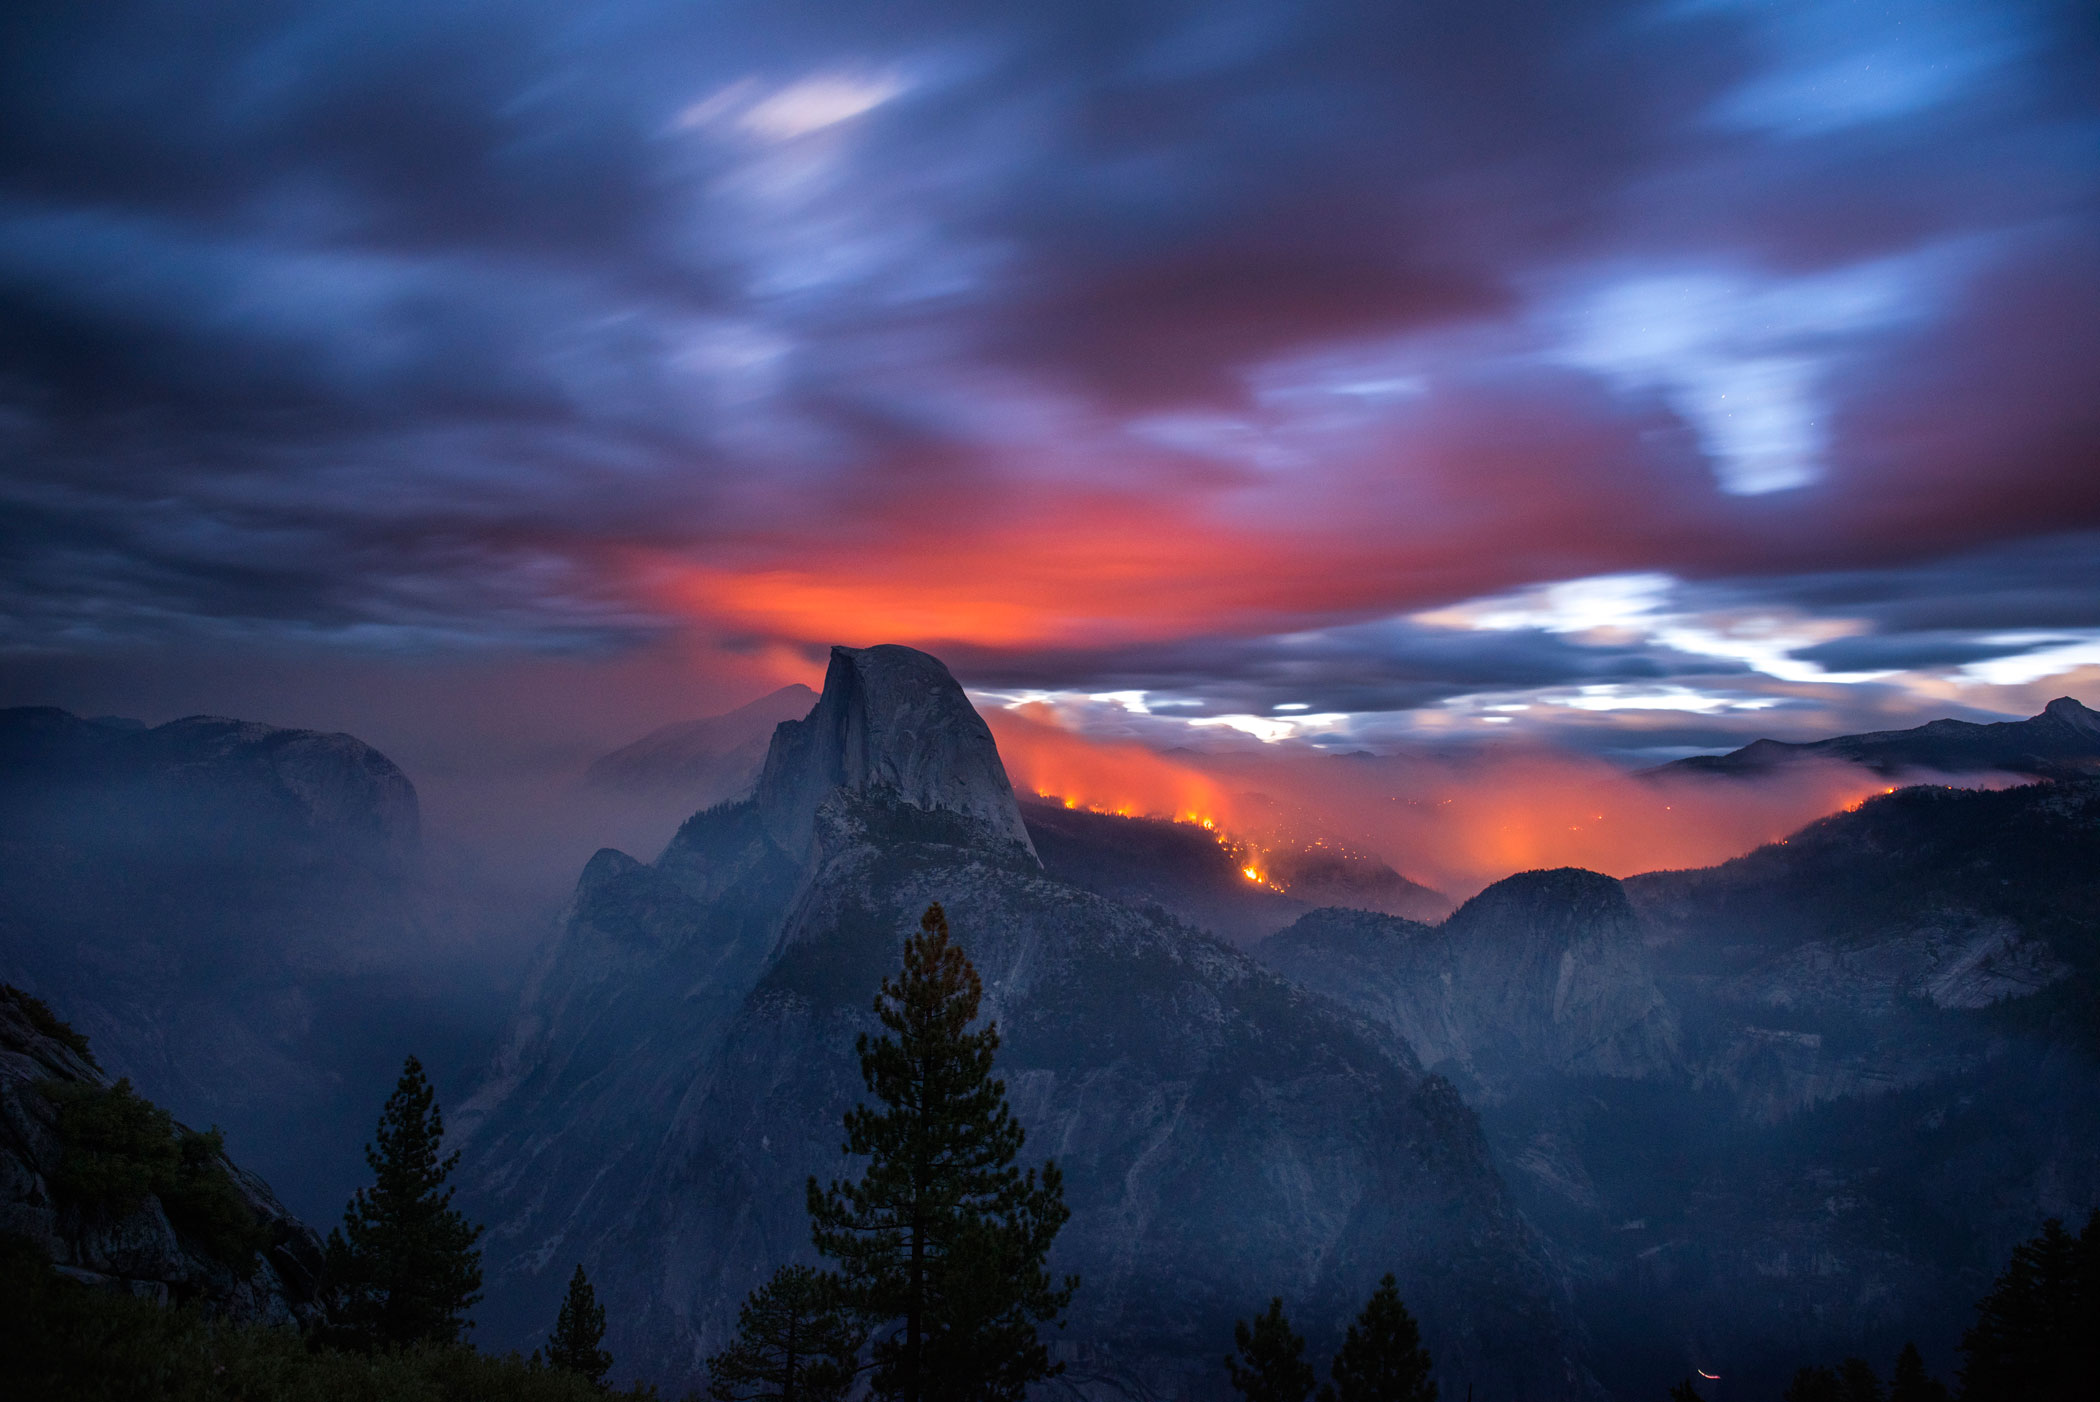 Yosemite Meadow Fire Wildfire